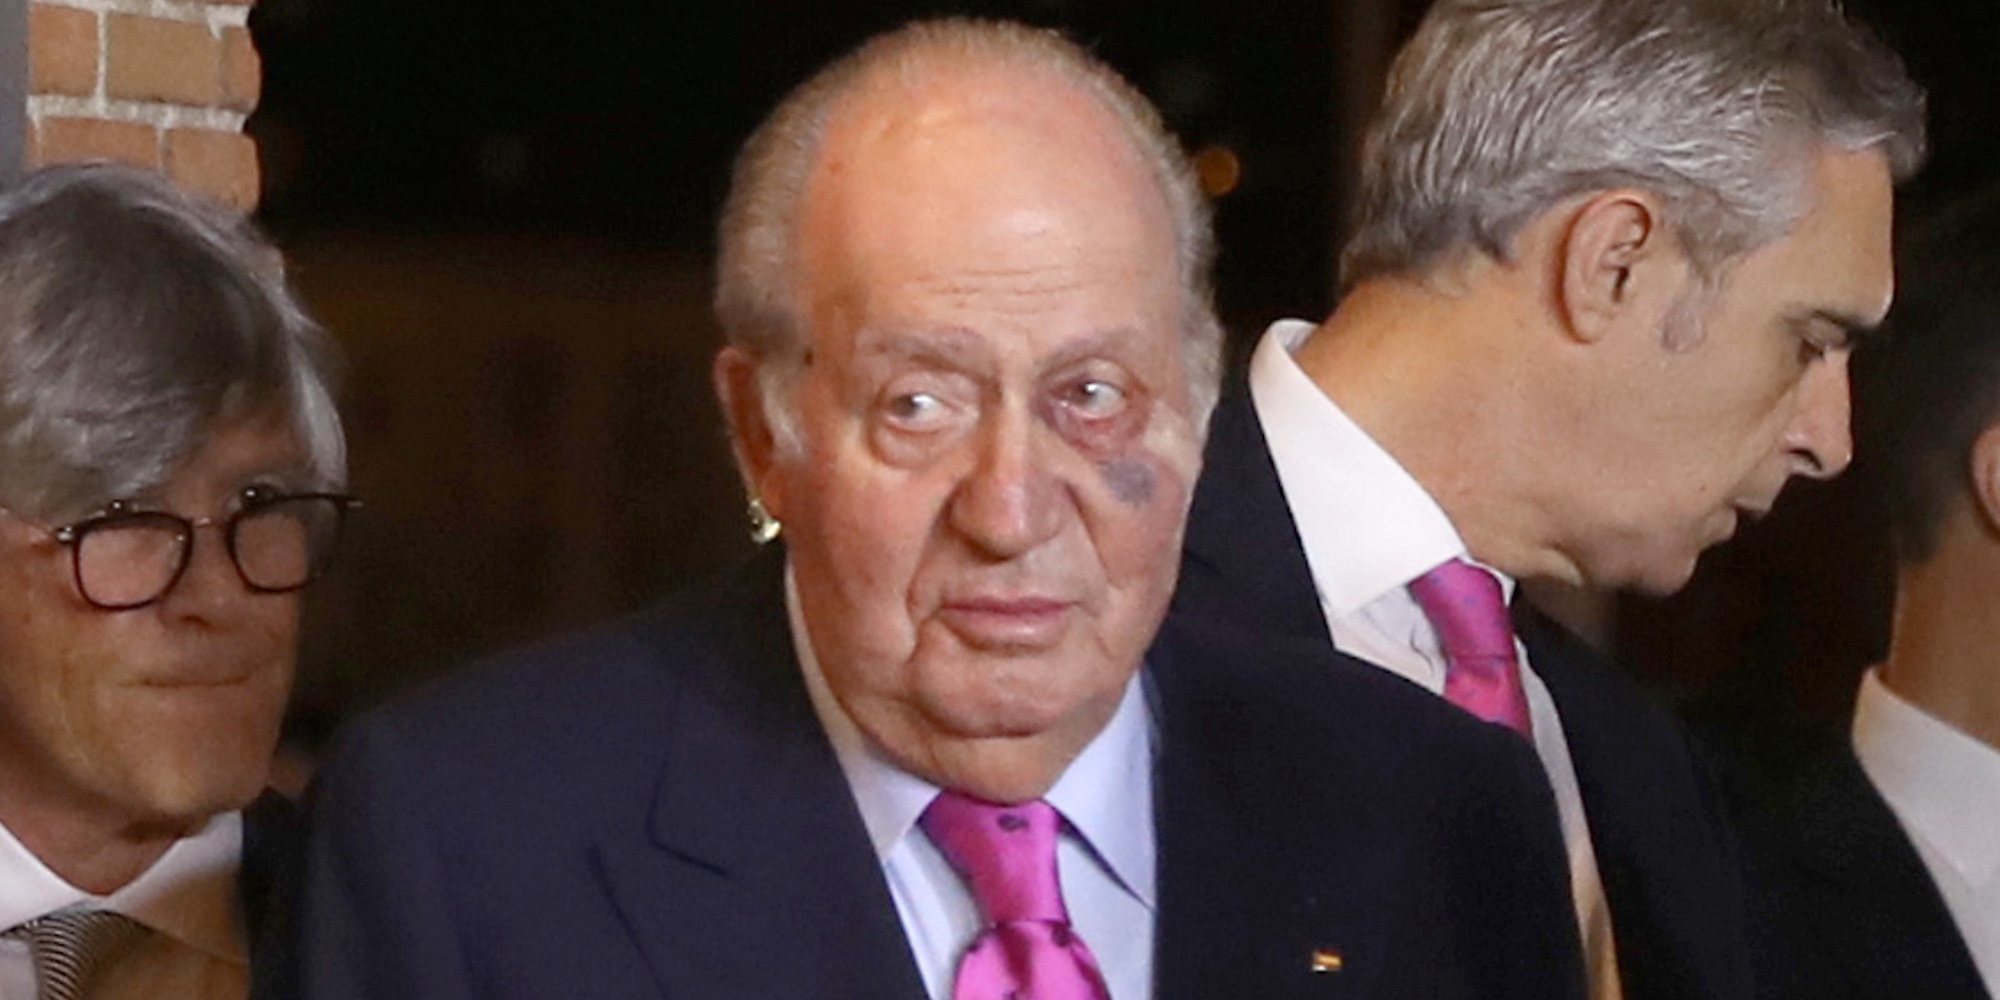 El Rey Juan Carlos, operado de un carcinoma basocelular